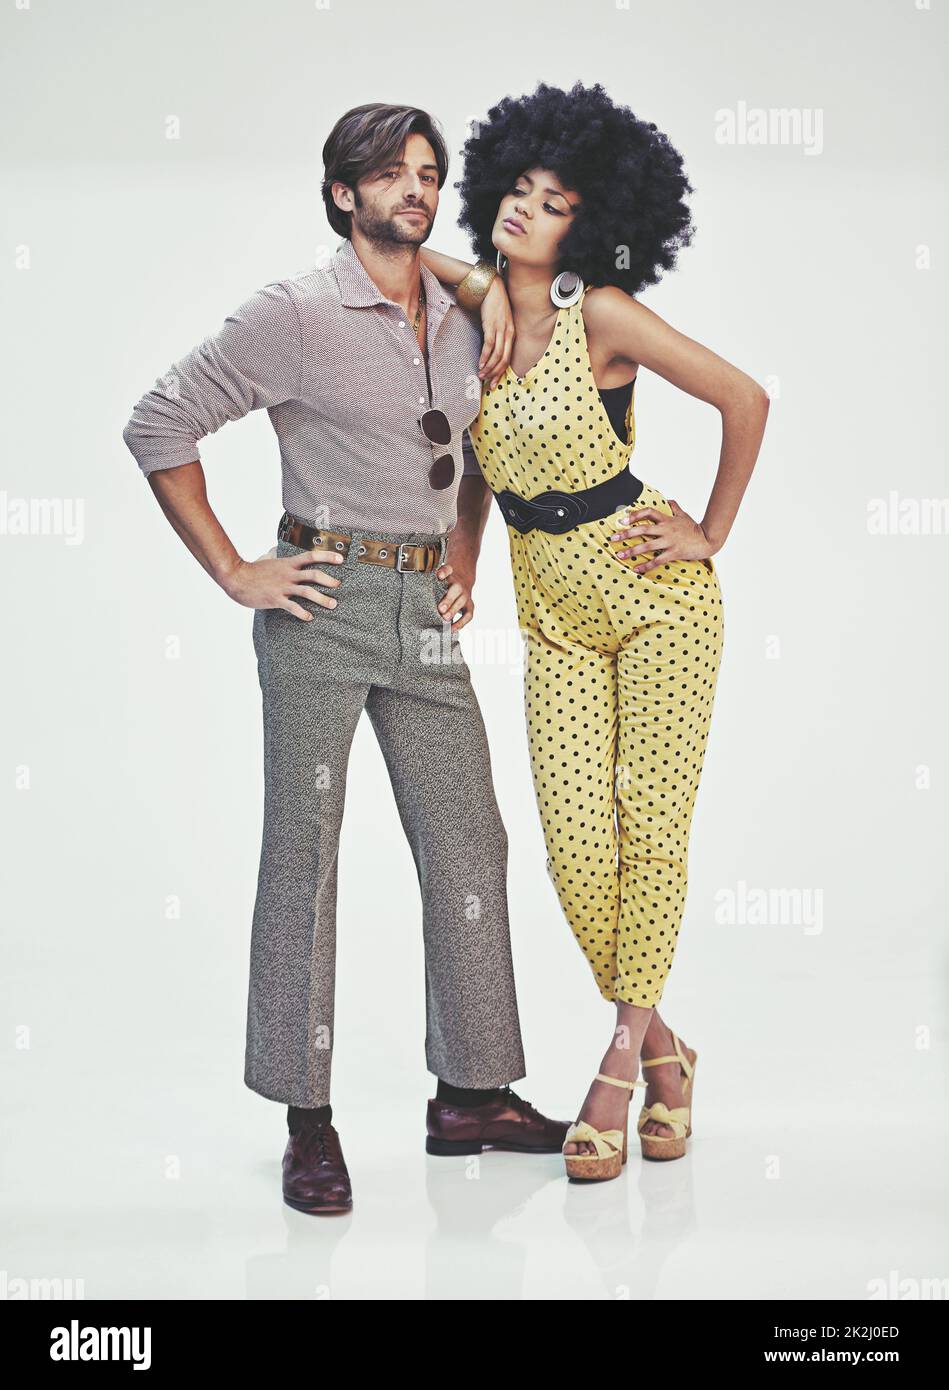 Retro-Romantik. Ein attraktives junges Paar, das in Retro-70s-Kleidung zusammensteht. Stockfoto